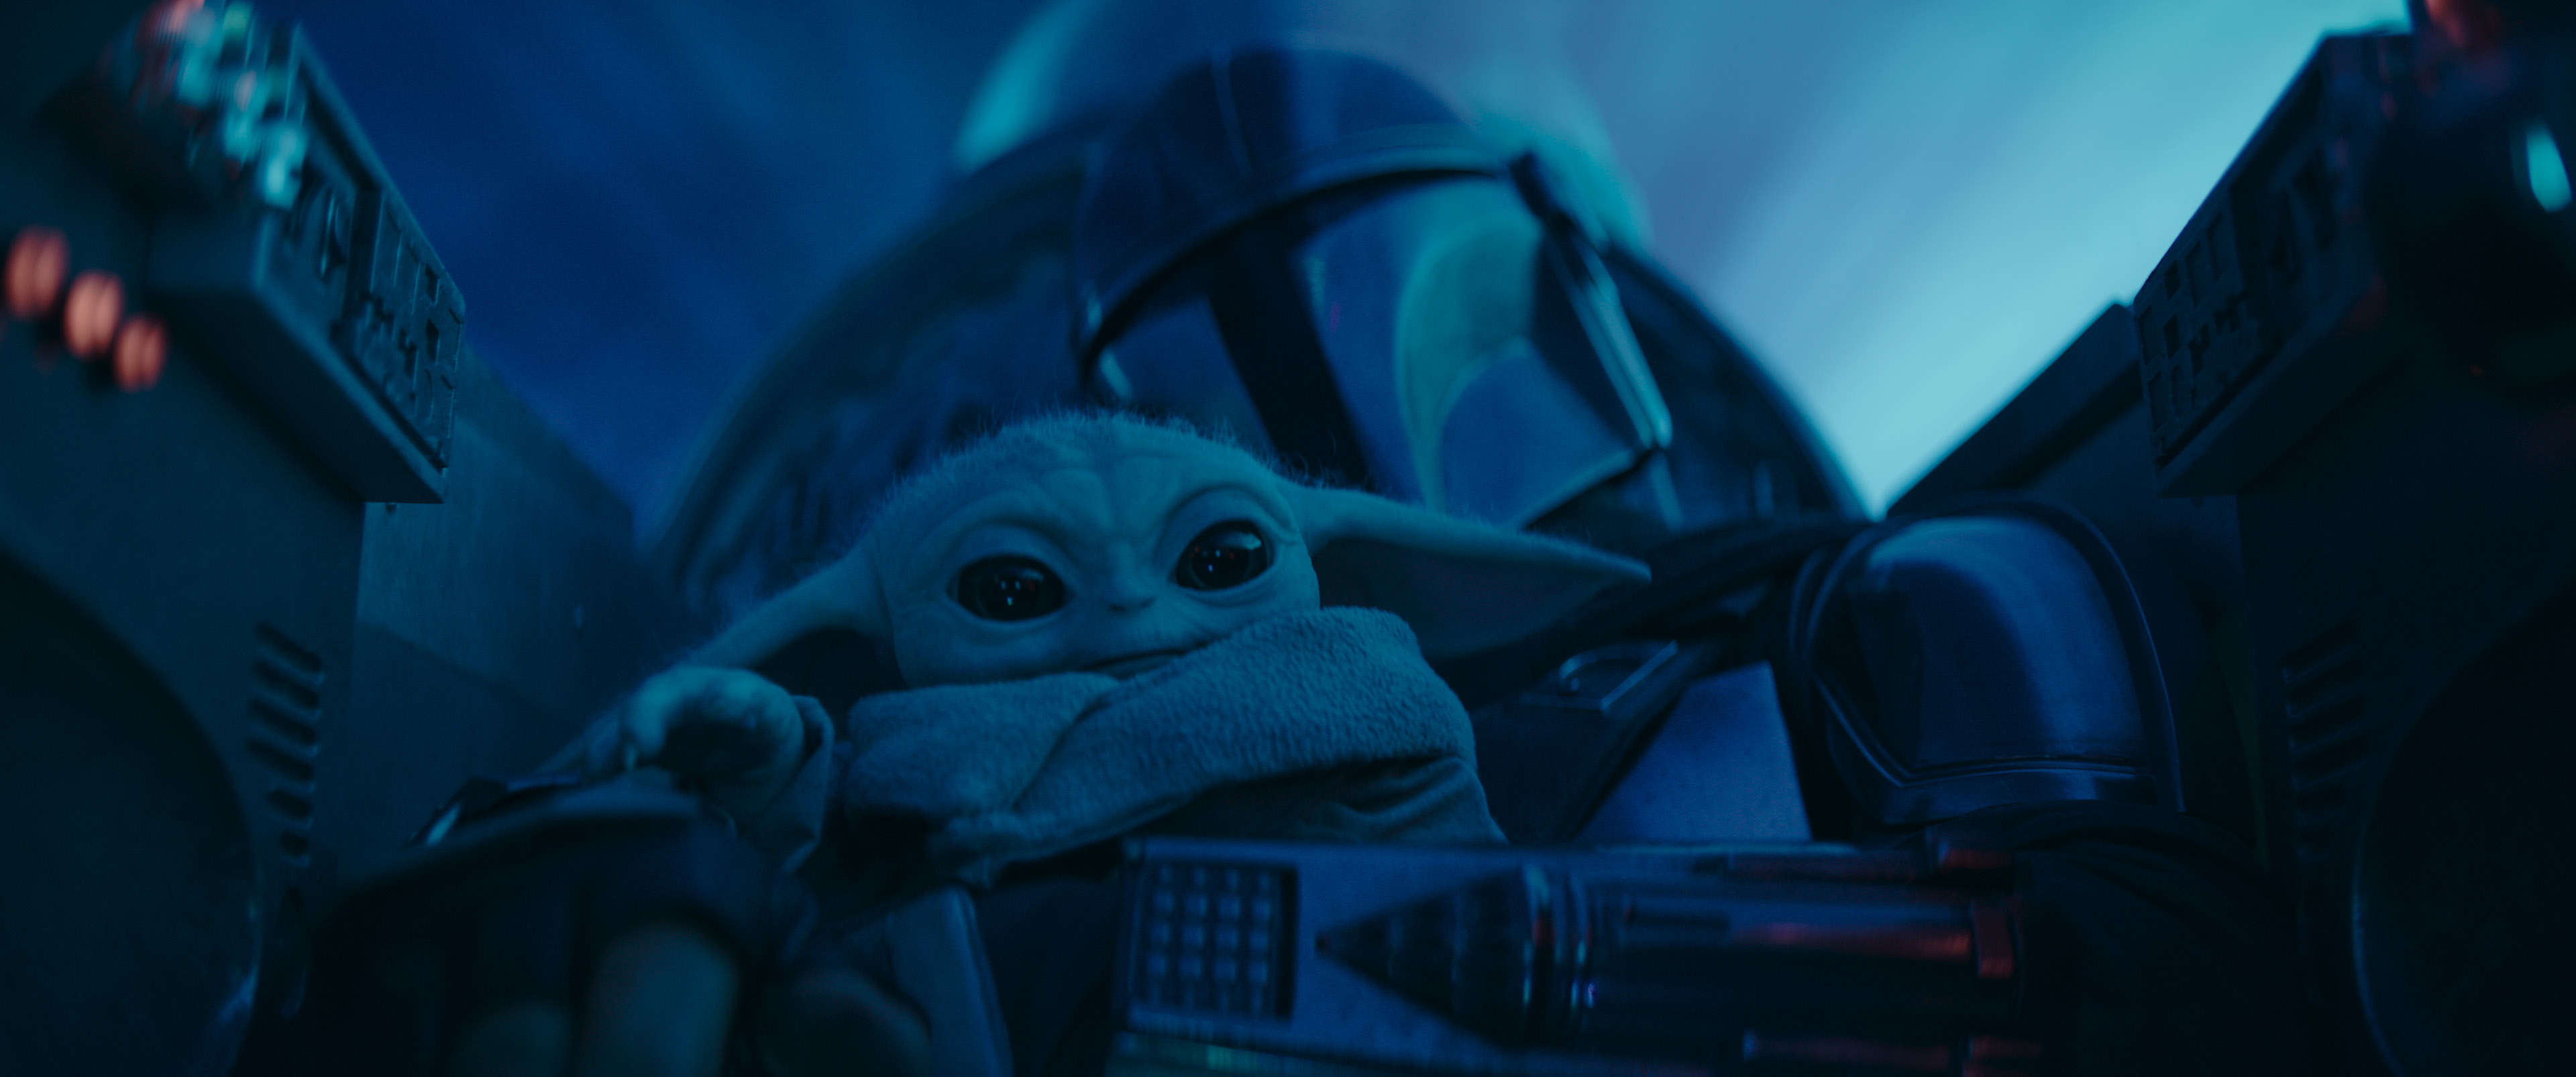 Mando accompagné de "Baby Yoda" à bord de son vaisseau. Image issu de la série The Mandalorian sur Disney+